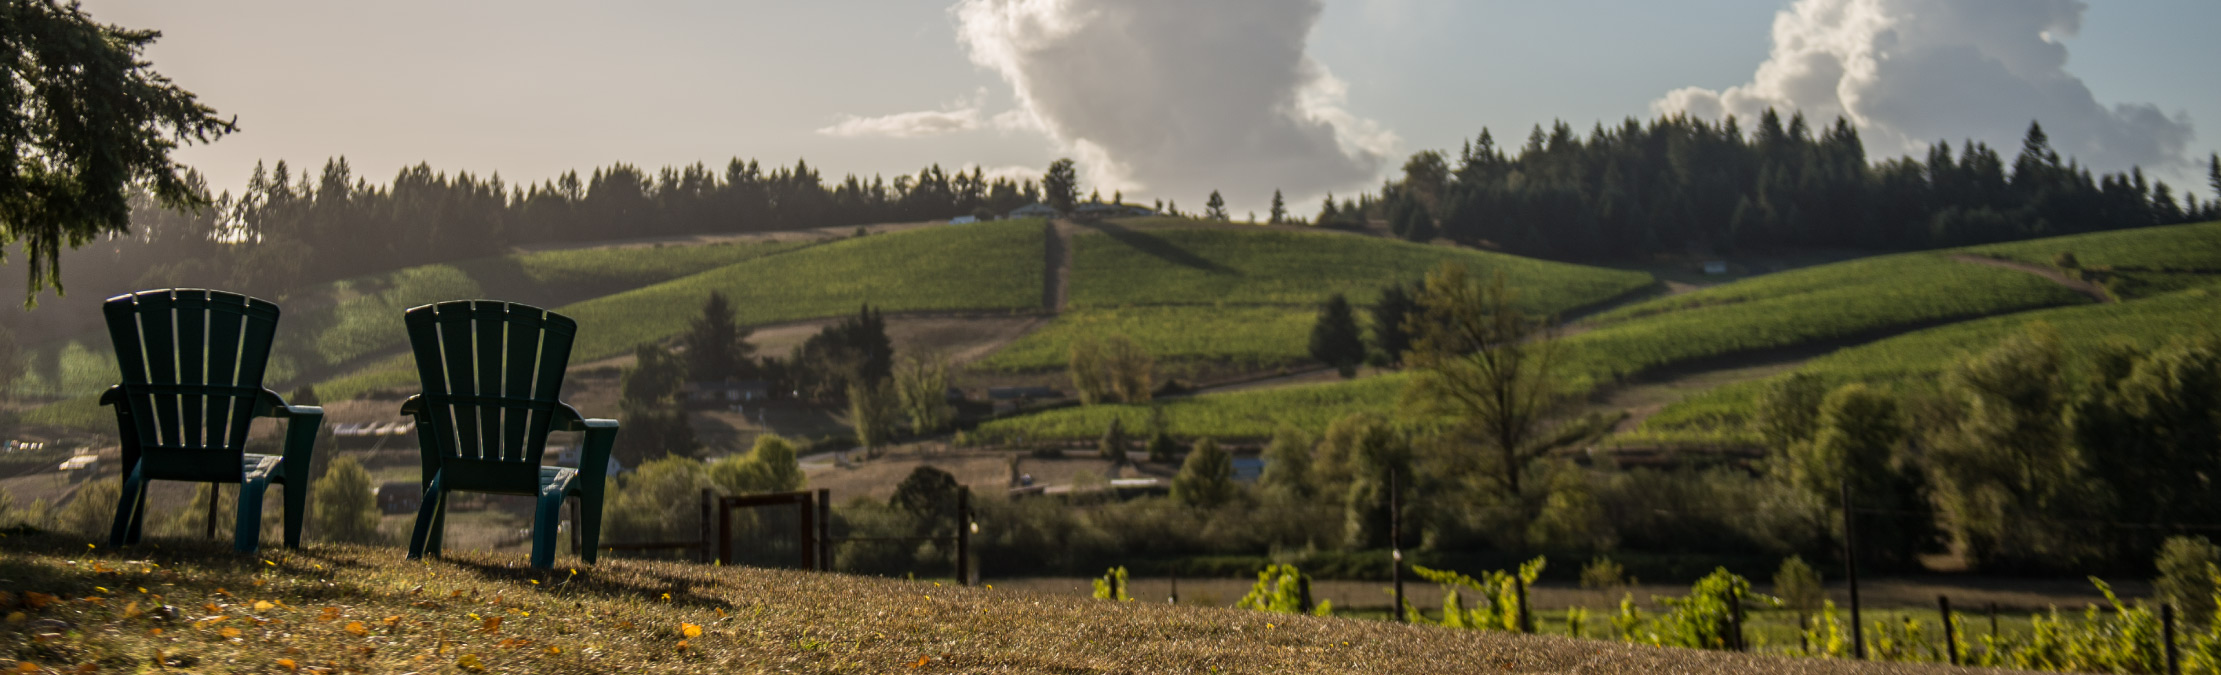 Vineyard Views at Silvan Ridge Winery in Eugene, Oregon